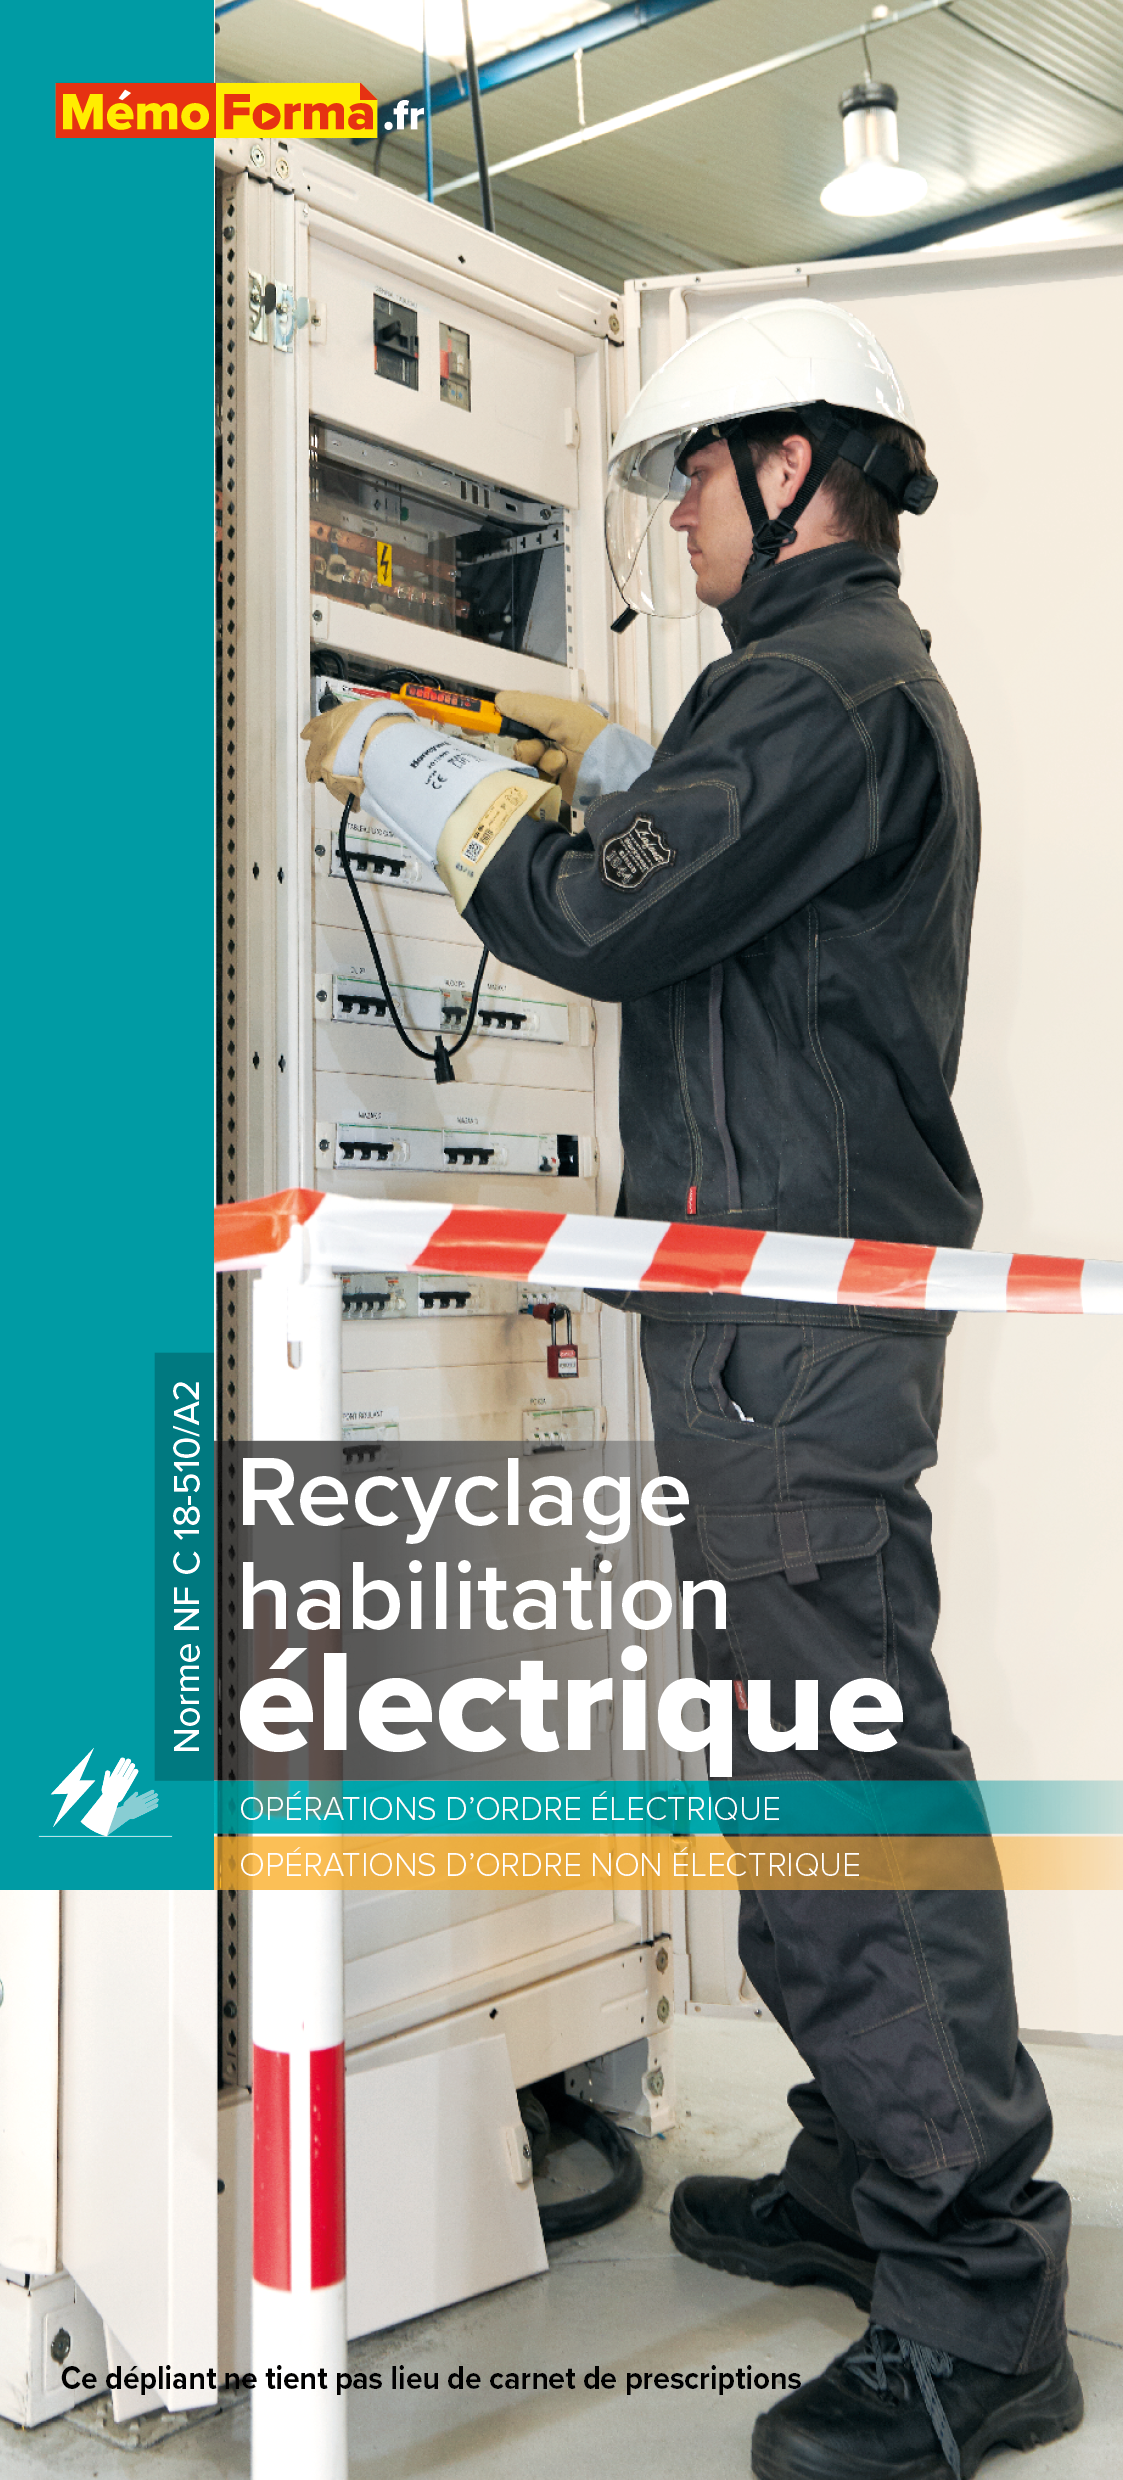 Dépliant – Recyclage habilitation électrique - MémoForma.fr